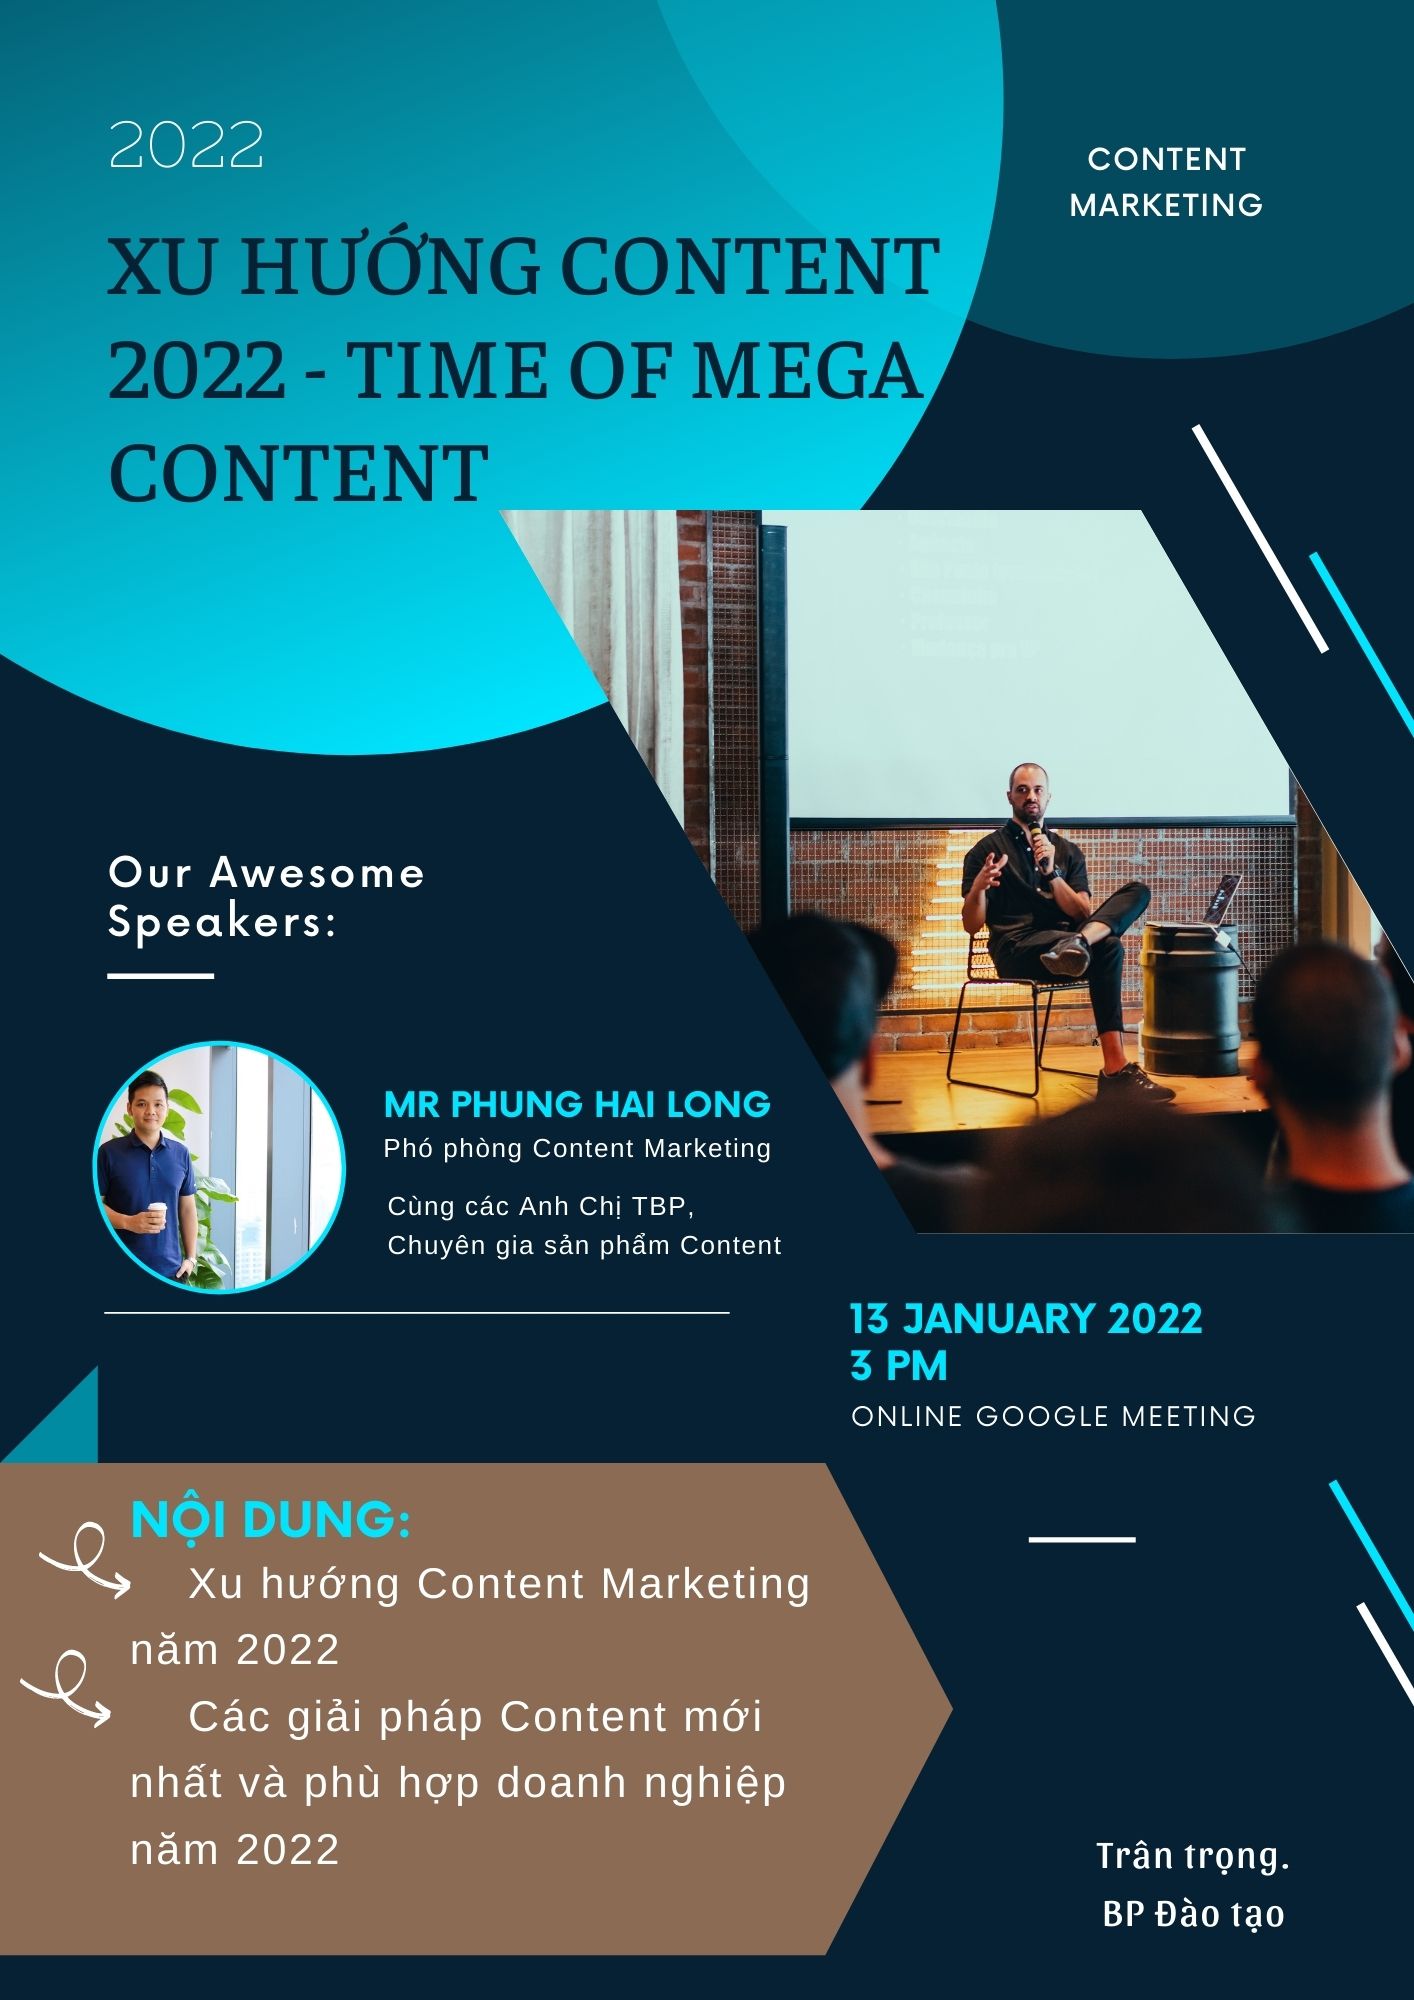 Xu hướng Content Marketing 2022.jpg